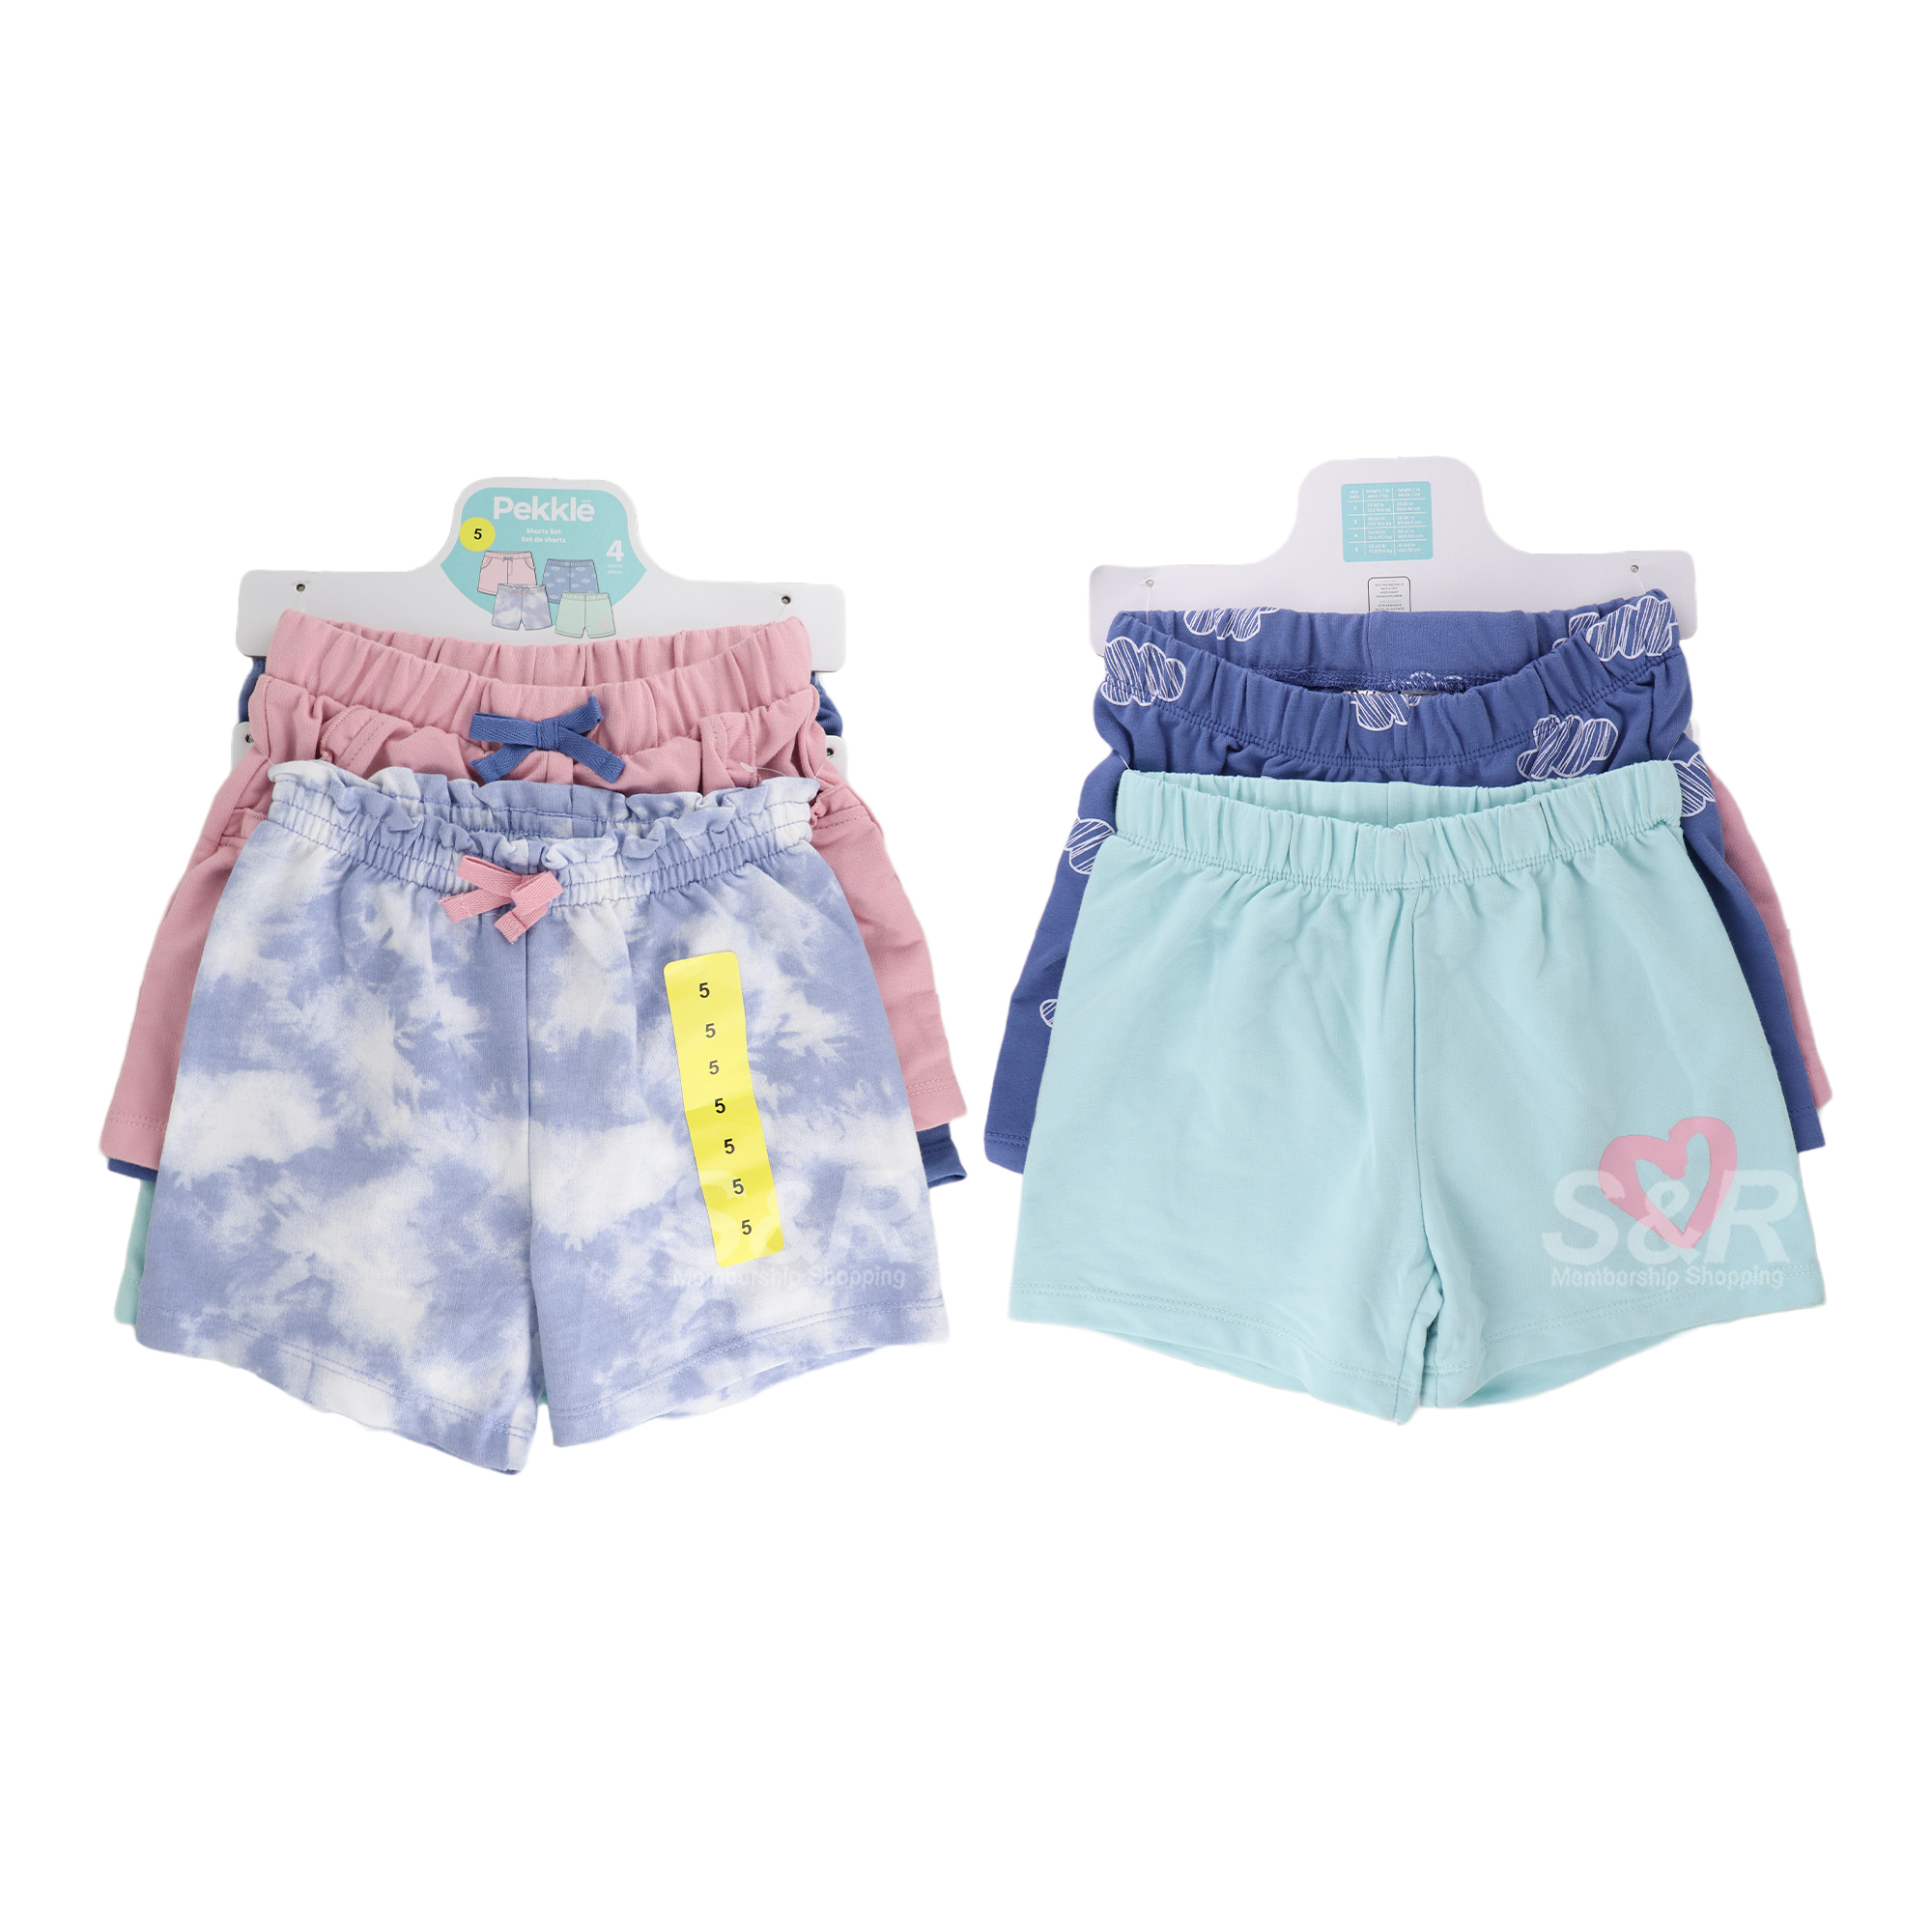 Pekkle Girls Assorted Shorts 4 pcs set